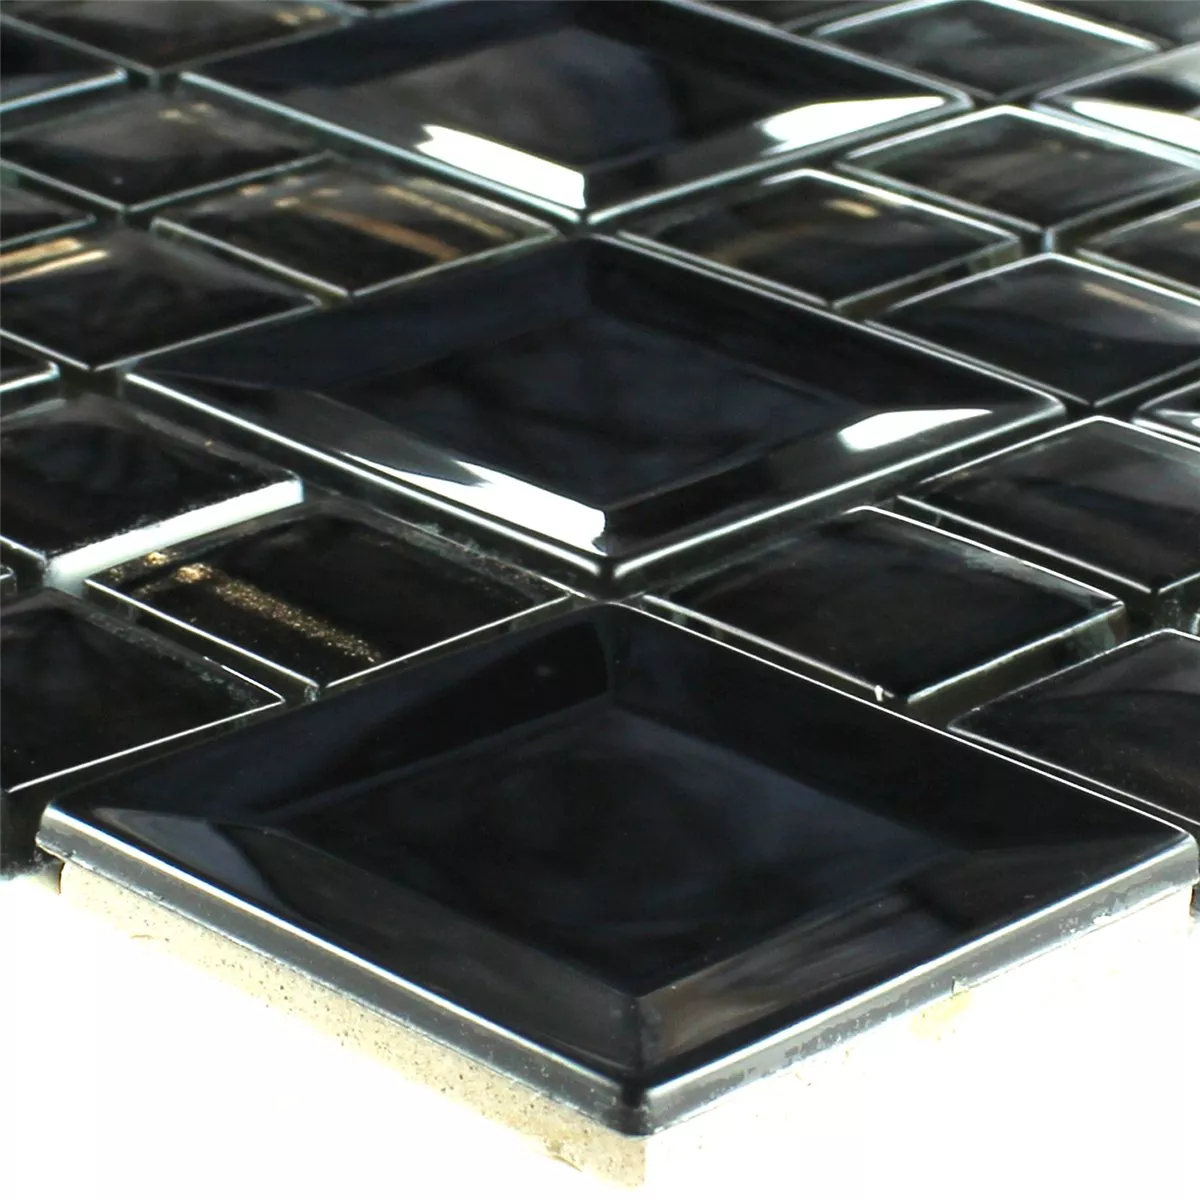 Mosaic Tiles Stainless Steel Metal Black